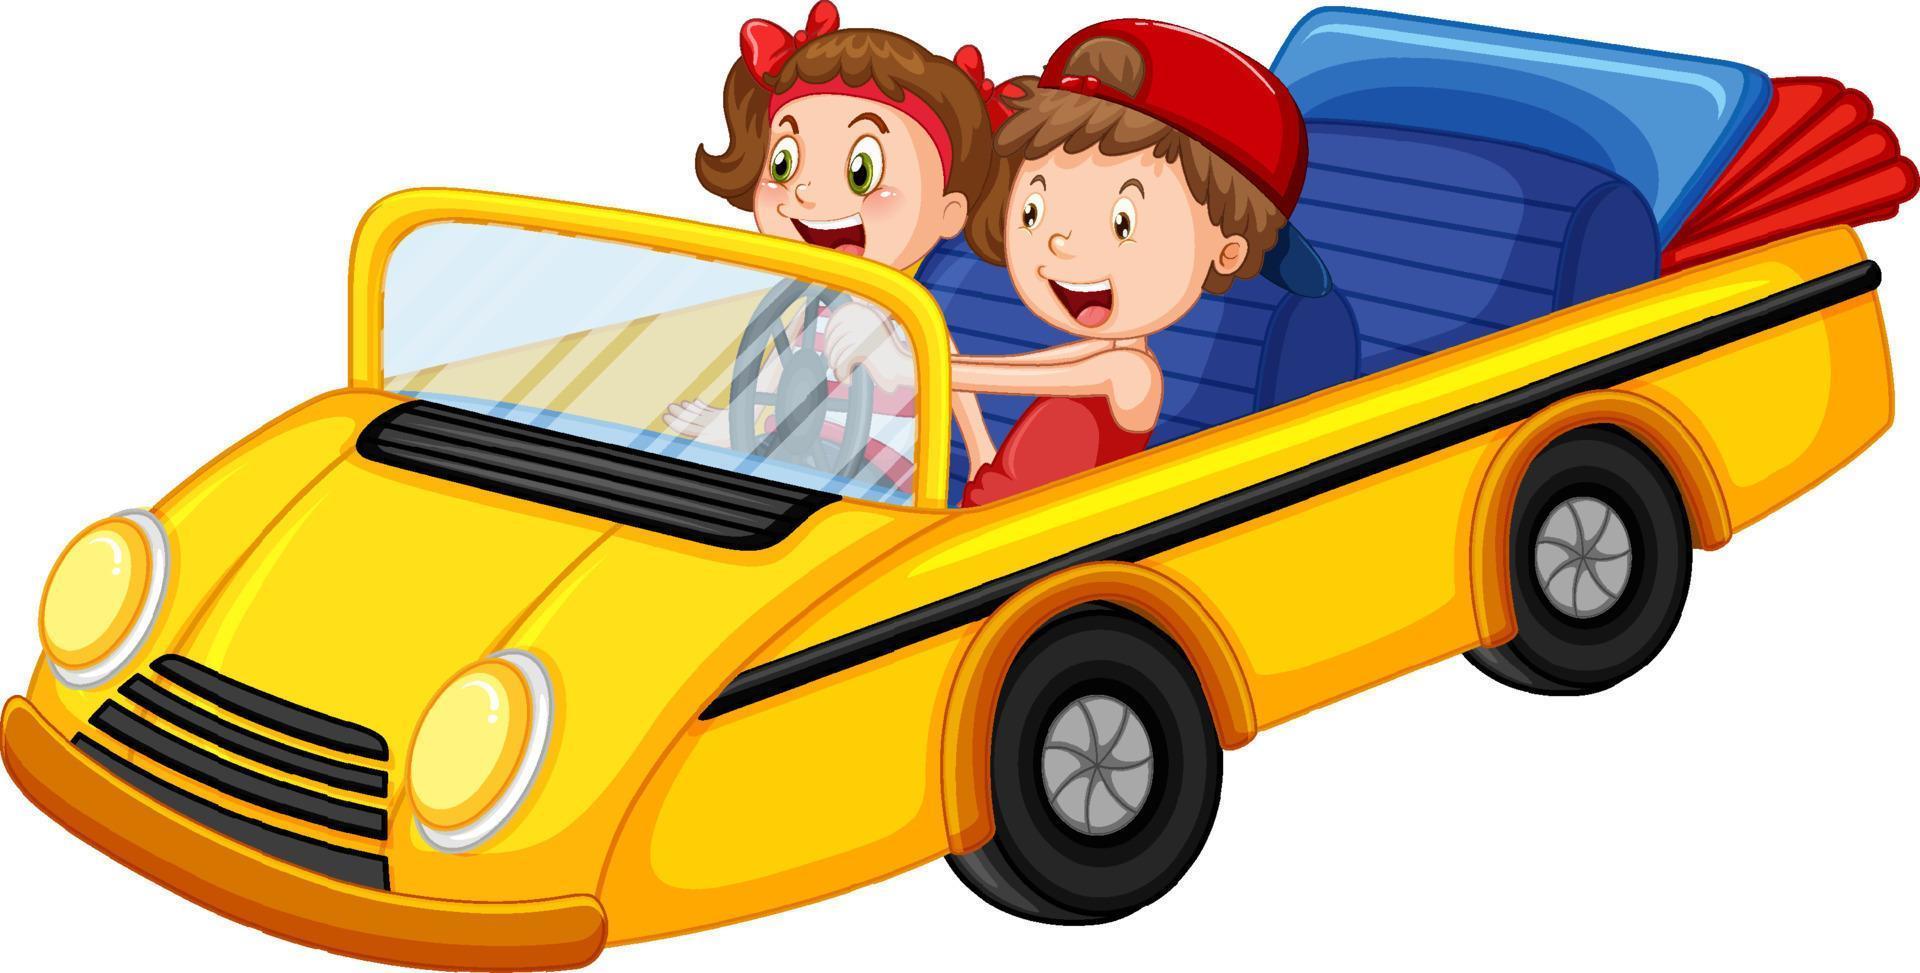 bambini in auto decappottabile d'epoca gialla vettore